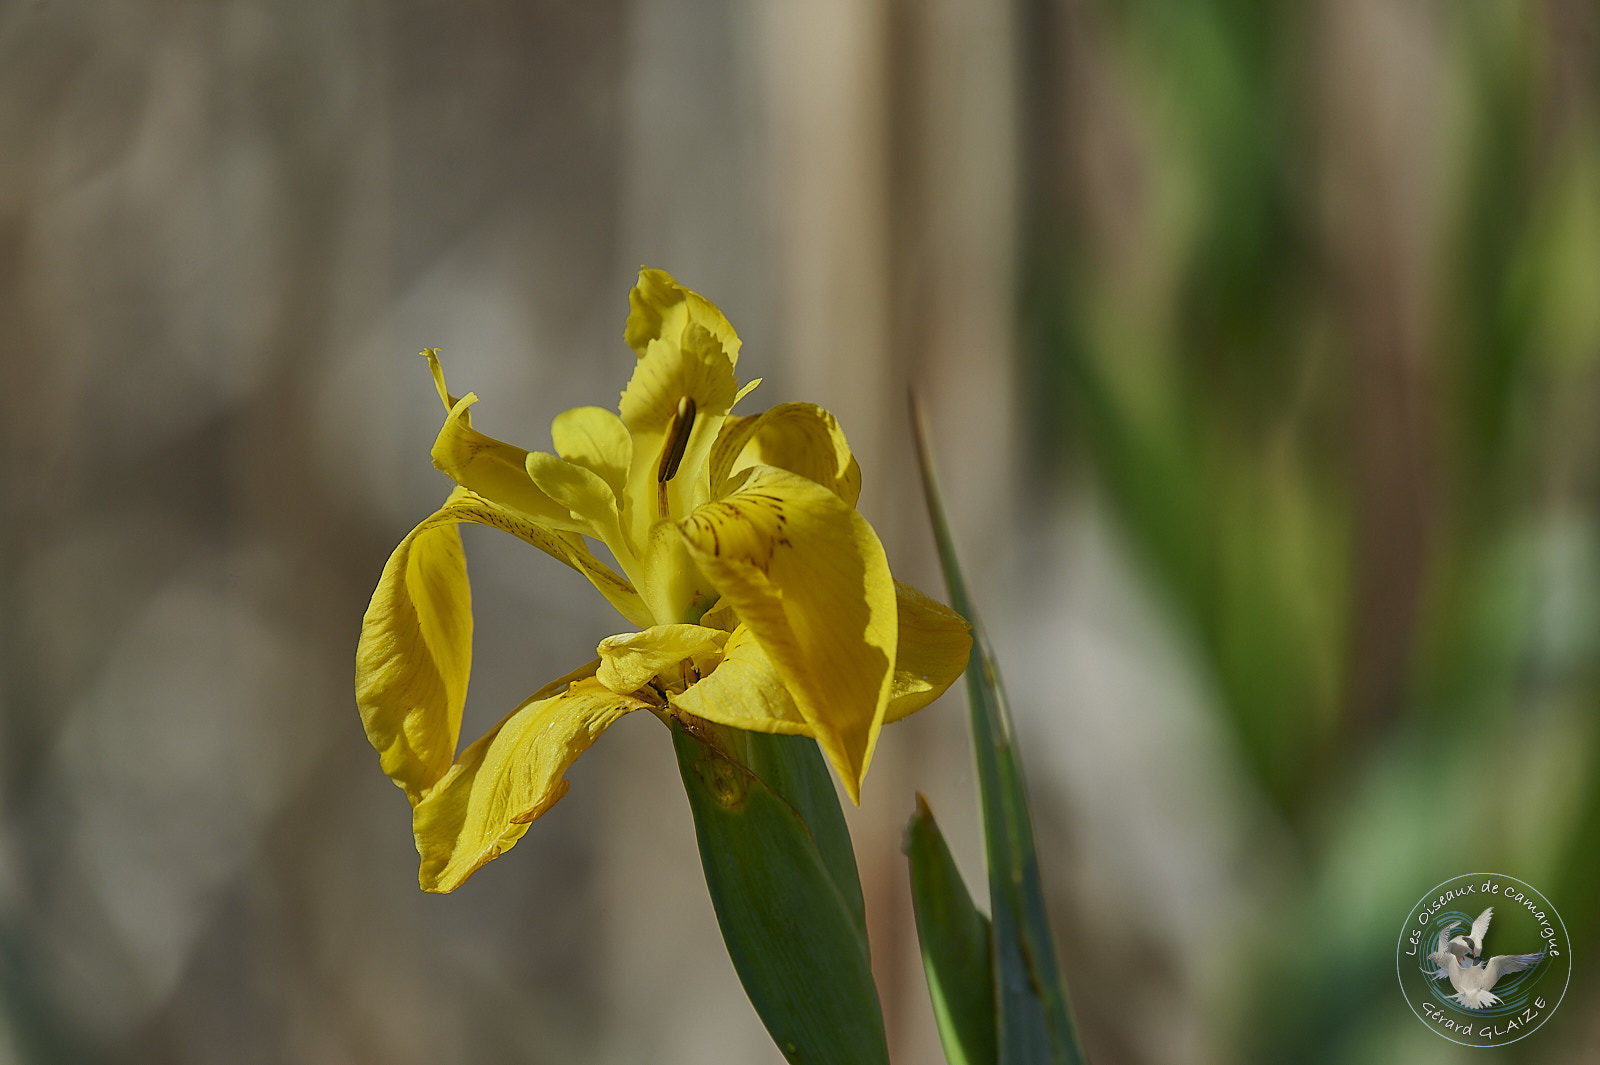 Camargue Flora - Iris des marais